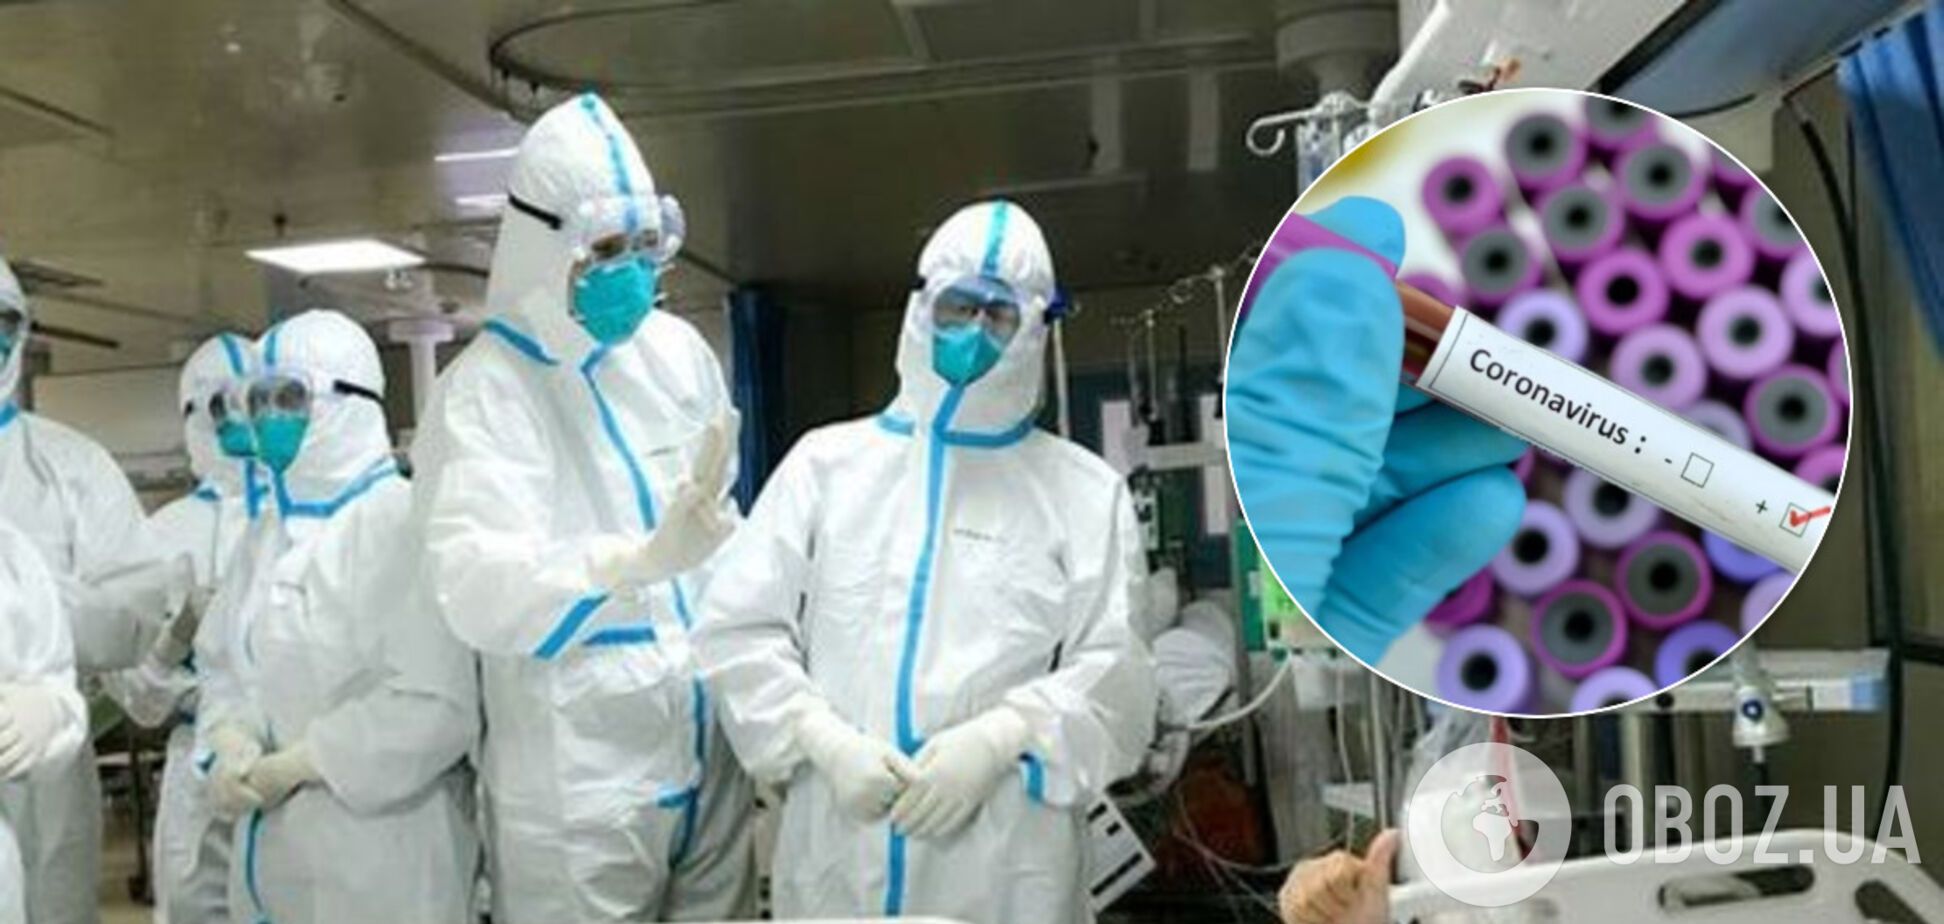 Словакия подтвердила первый случай коронавируса